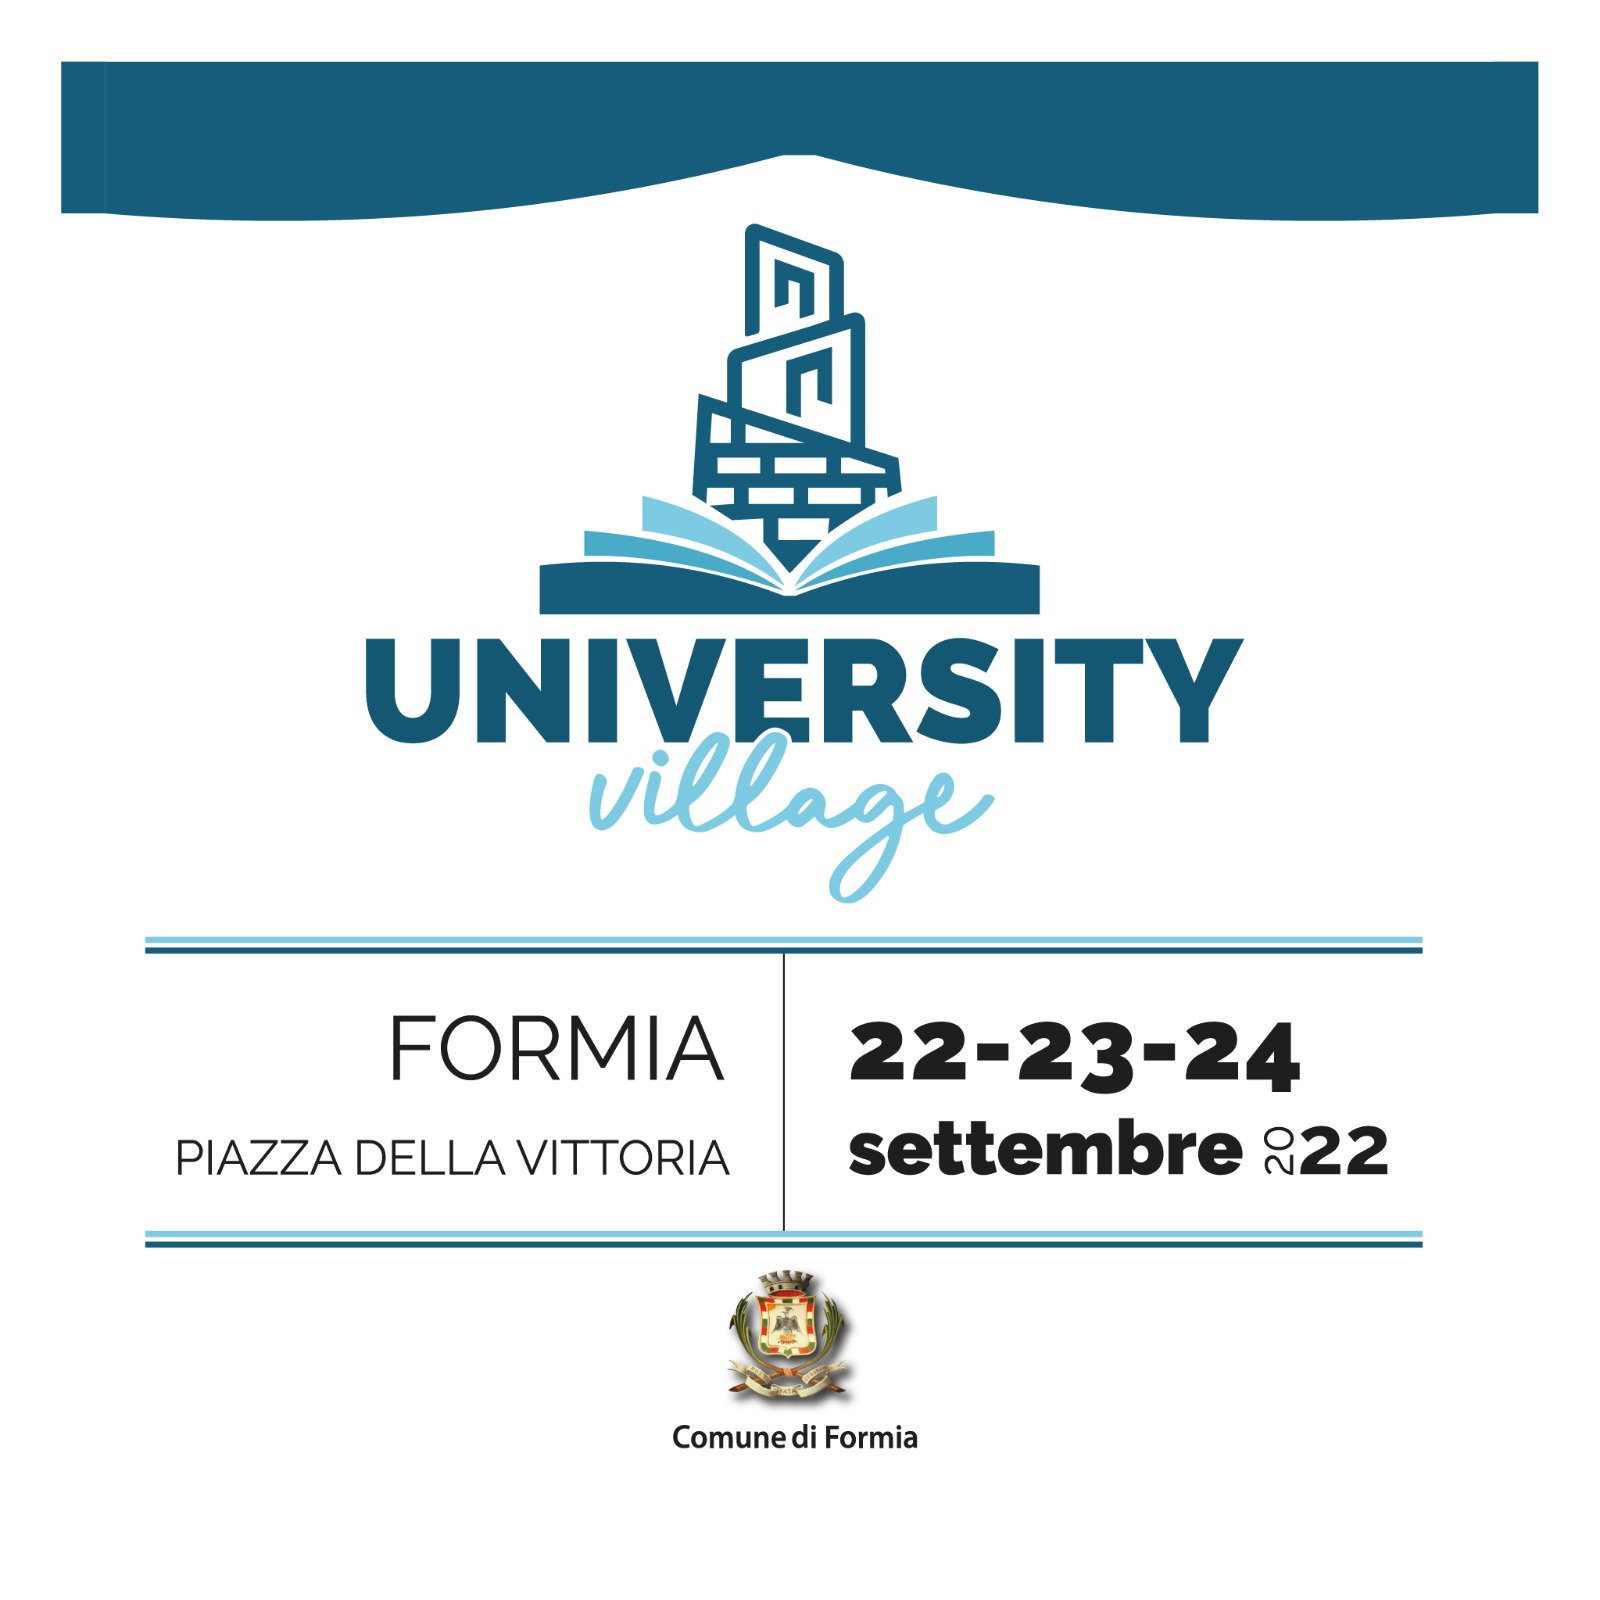 University Village, a Formia i 12 migliori Atenei italiani